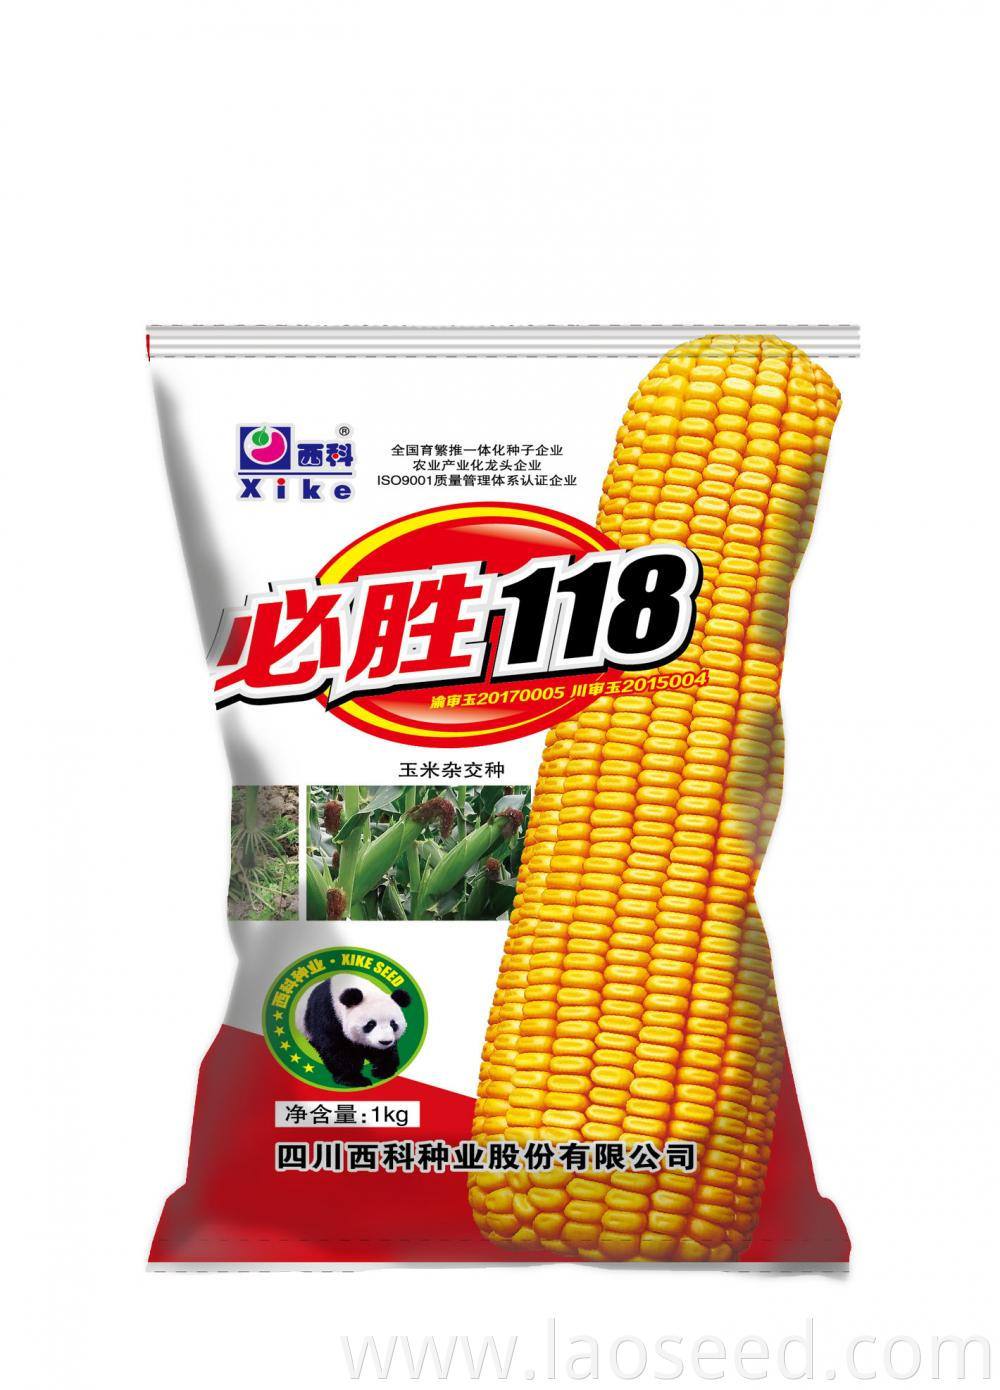 corn seed